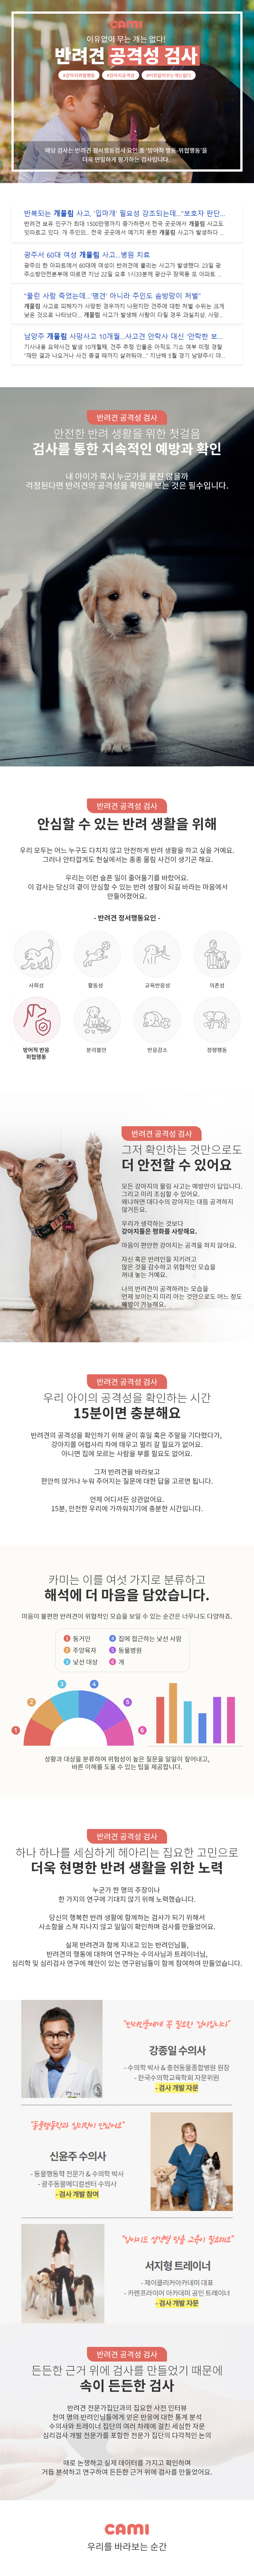 [카미] 강아지 성격테스트